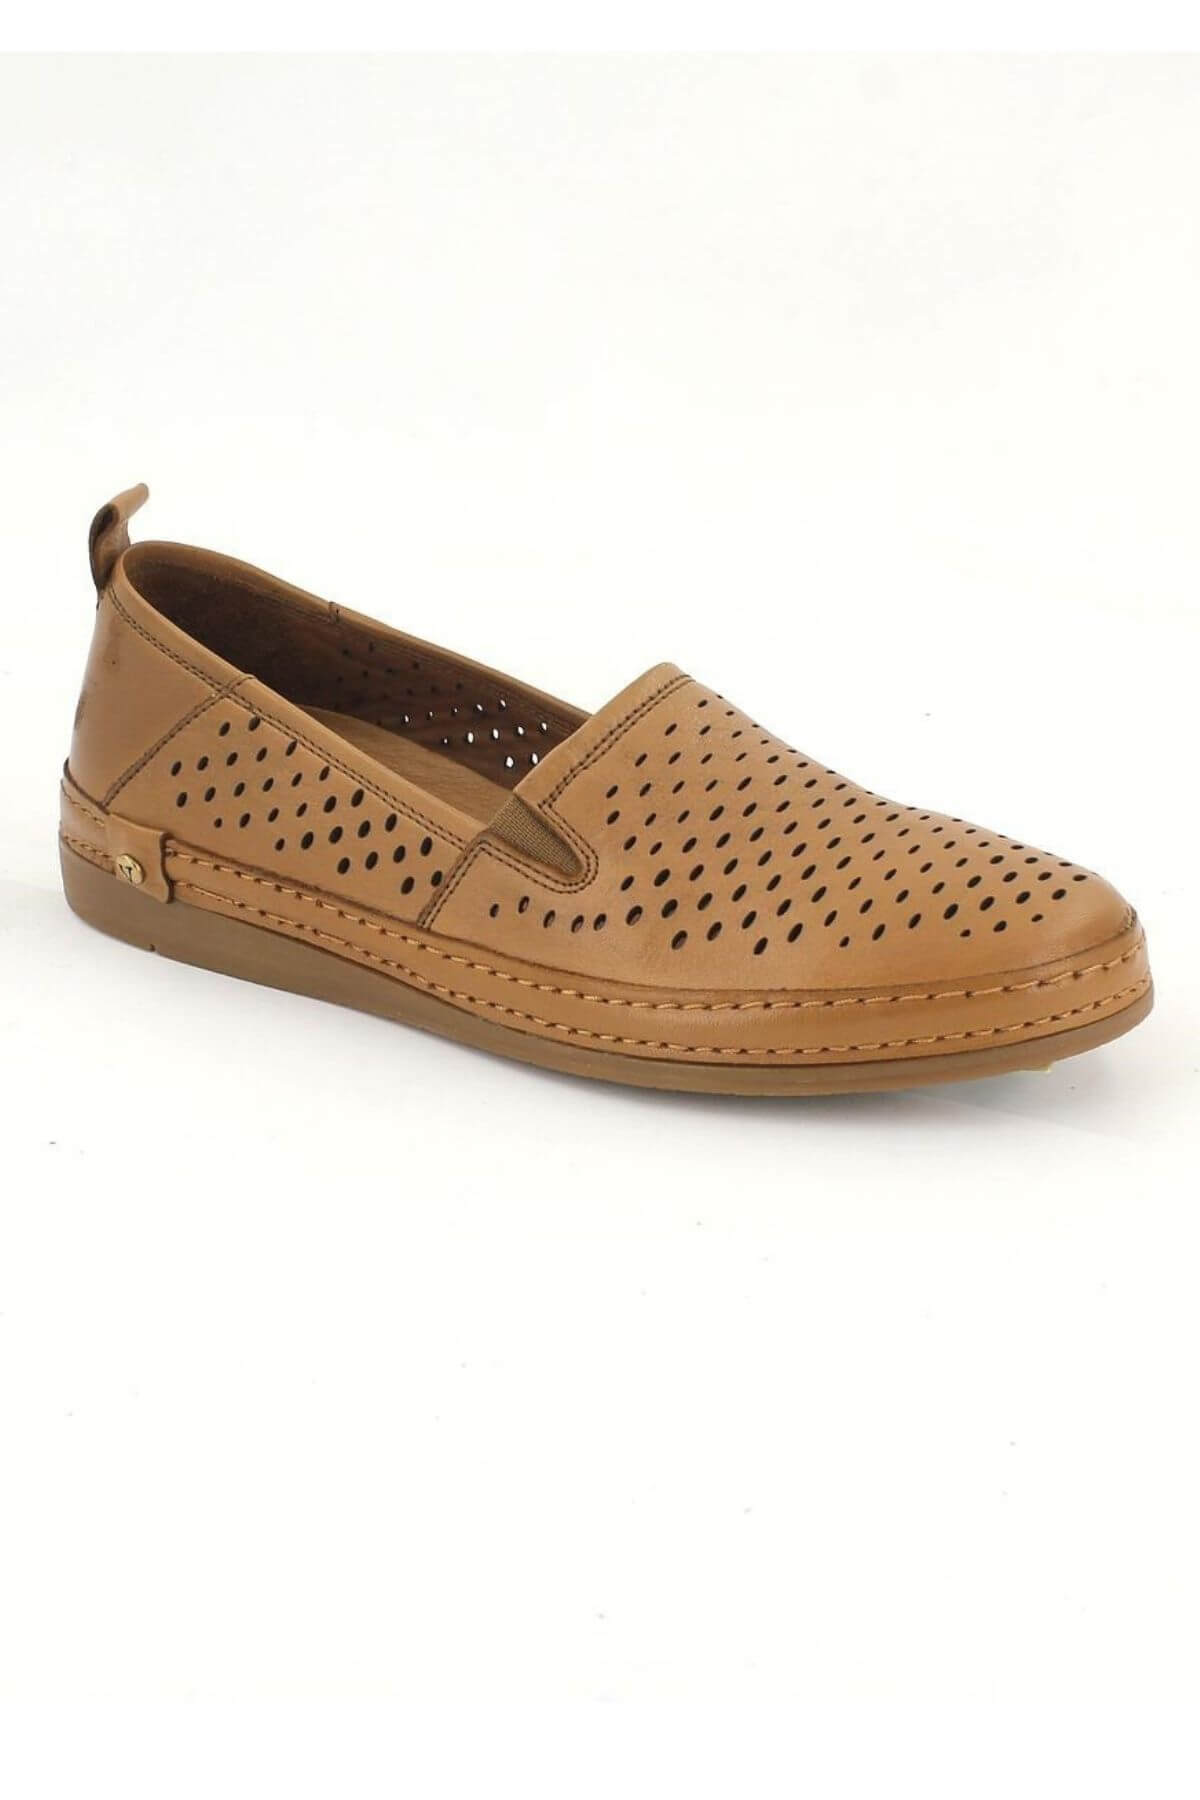 Kadın Yazlık Comfort Deri Ayakkabı Taba 2211201Y